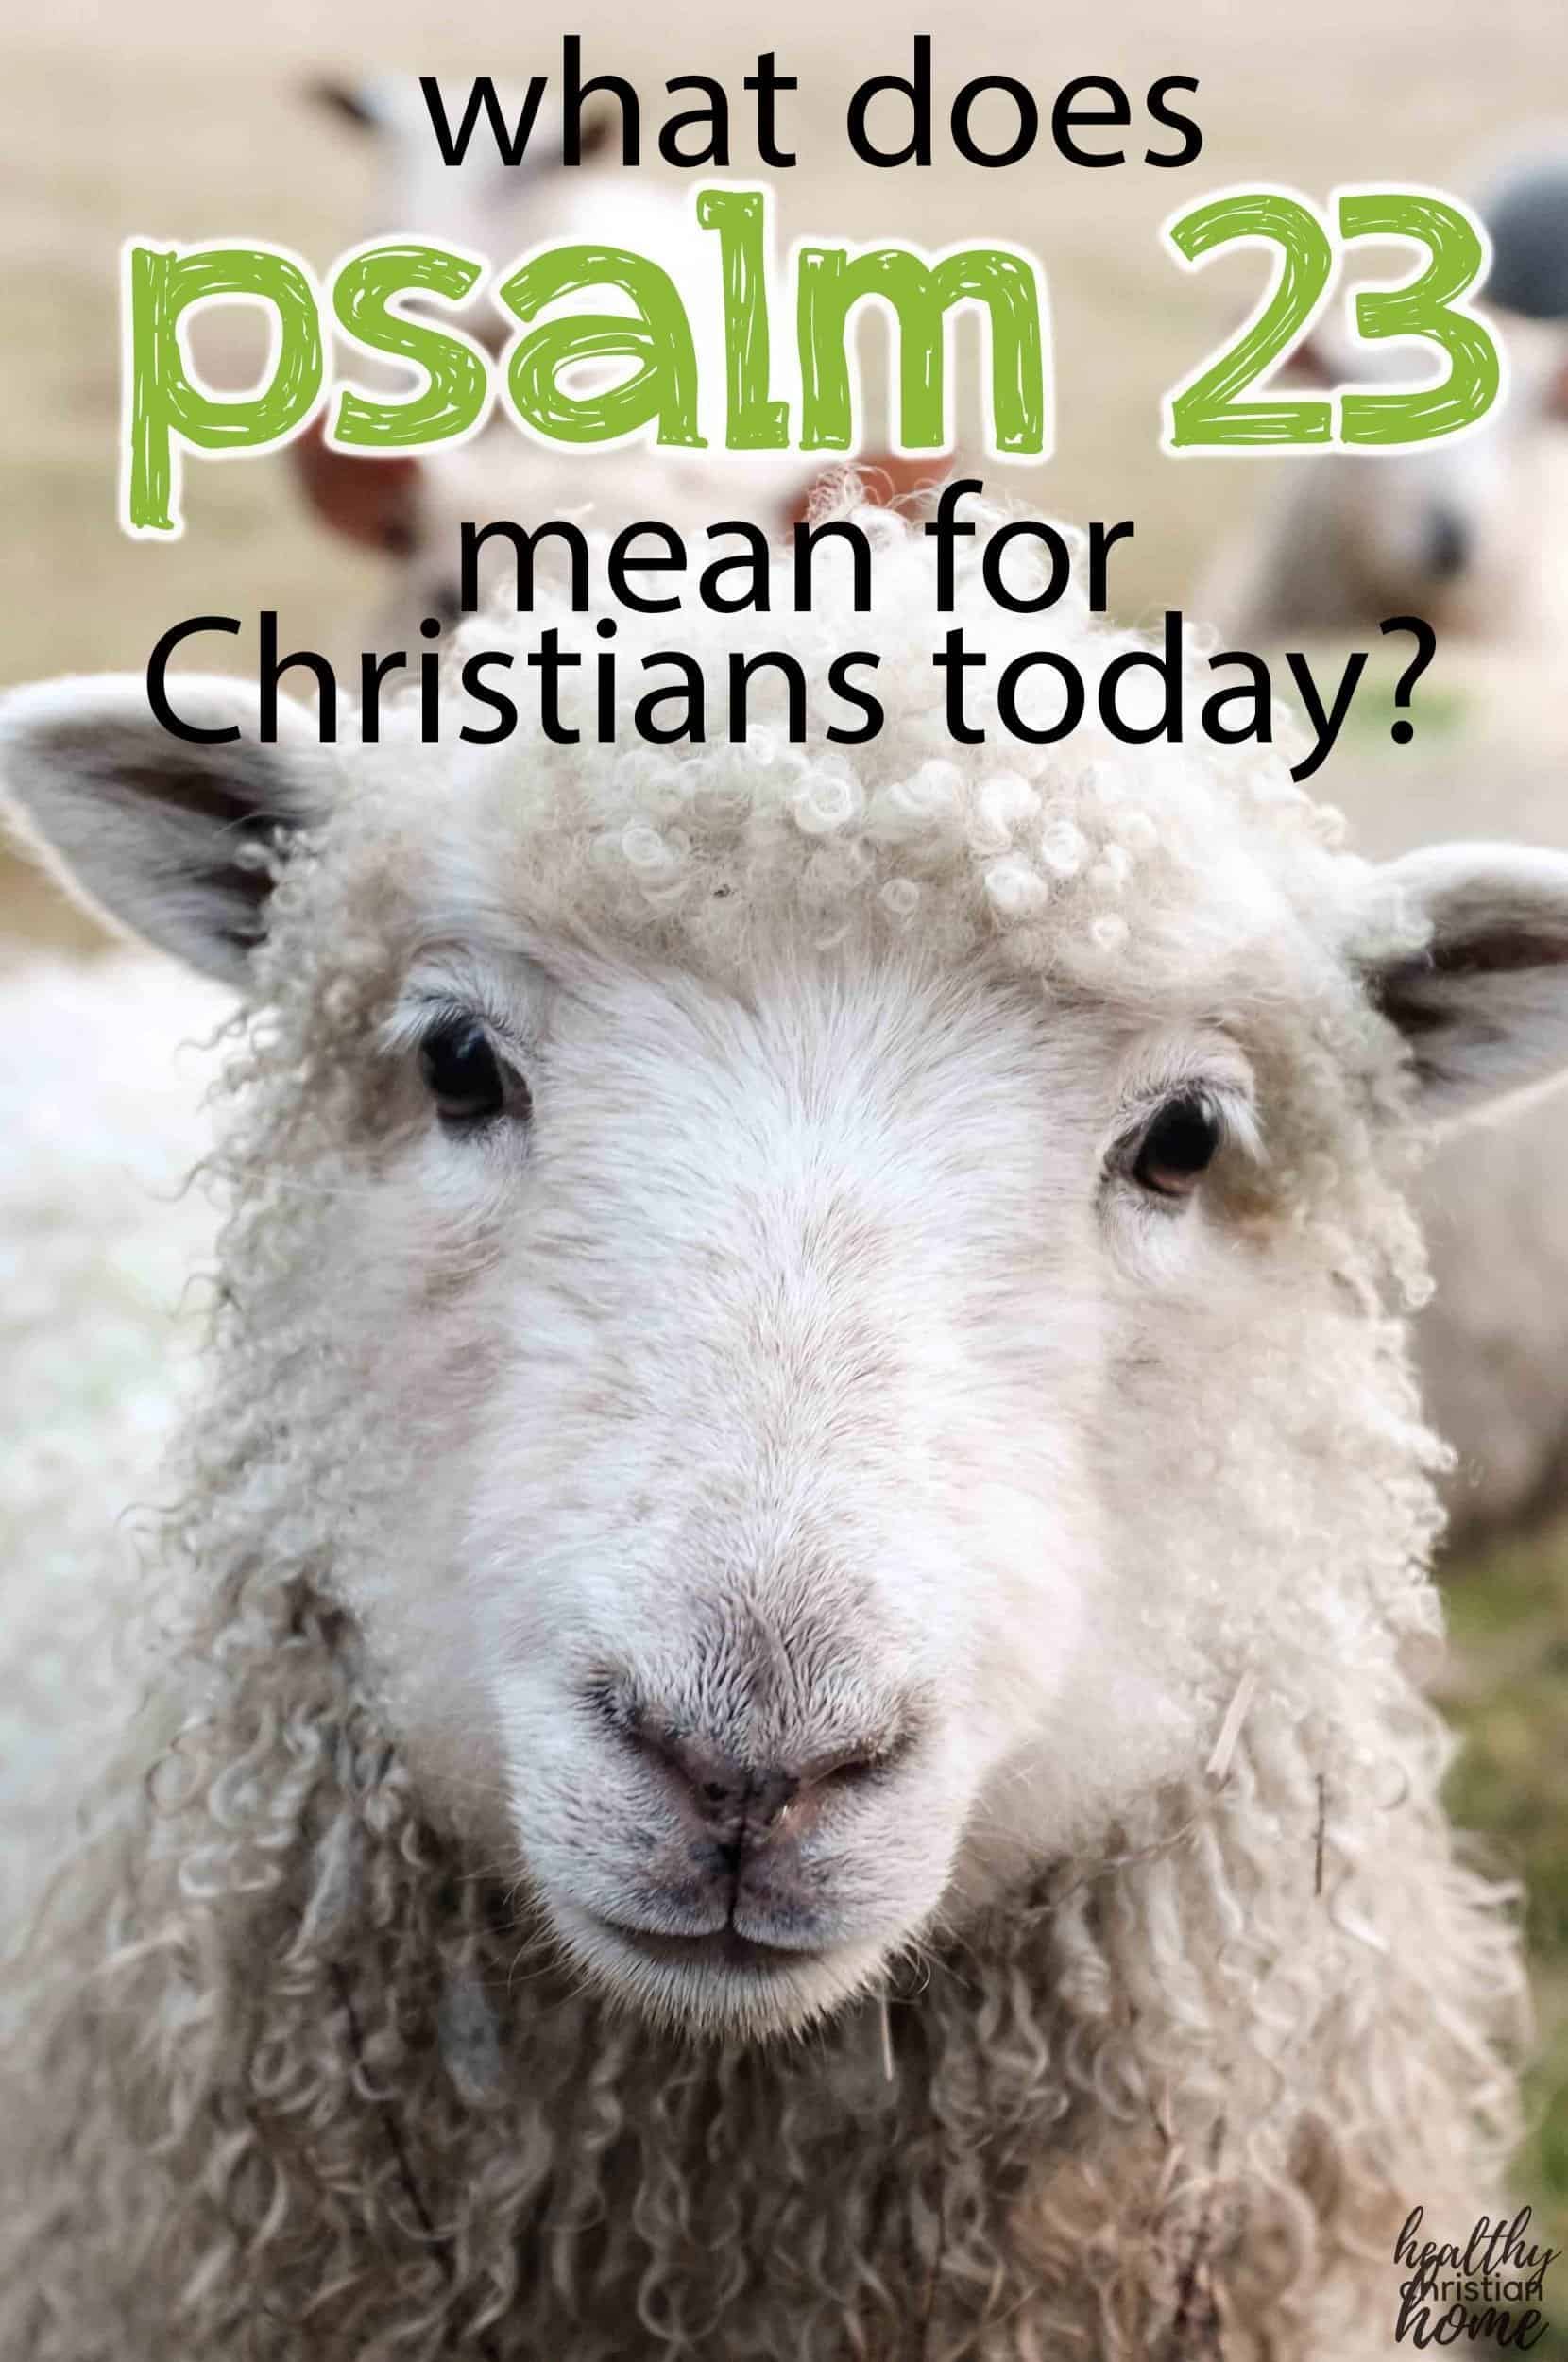 Um rosto de ovelha com texto sobre o Salmo 23's face with text overlay about "Psalm 23"